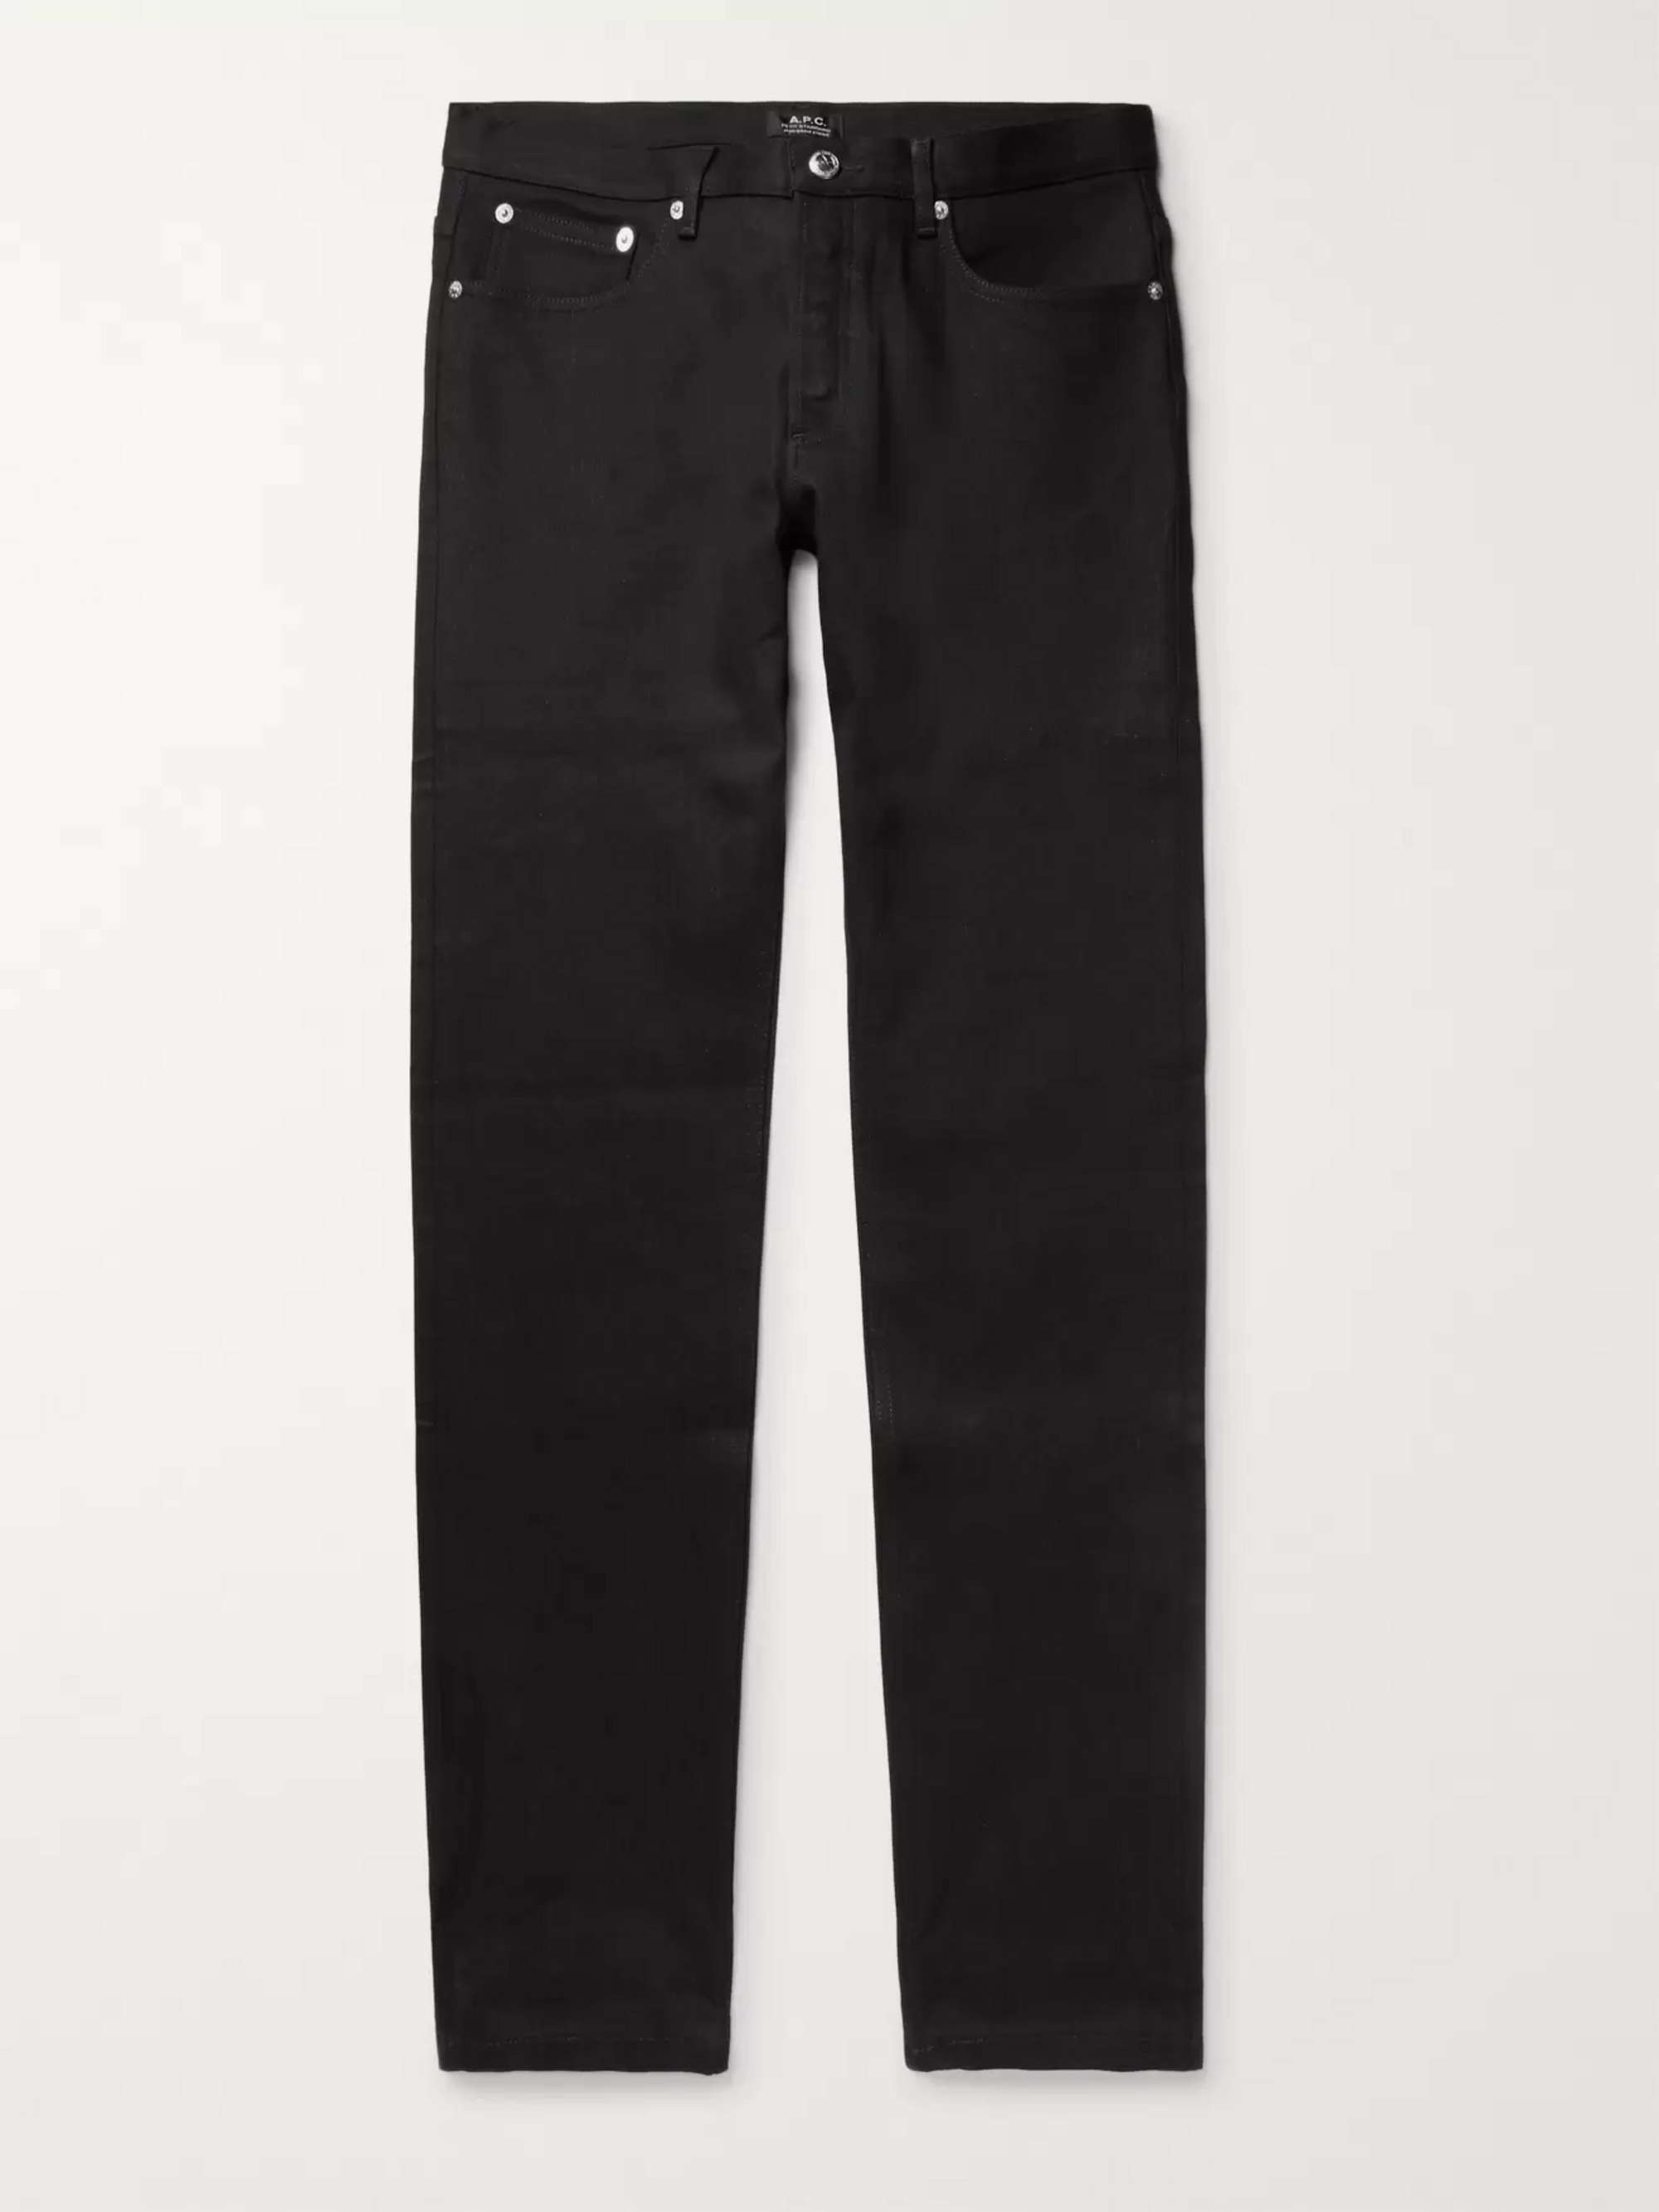 A.P.C. Petit Standard Slim-Fit Stretch-Denim Jeans